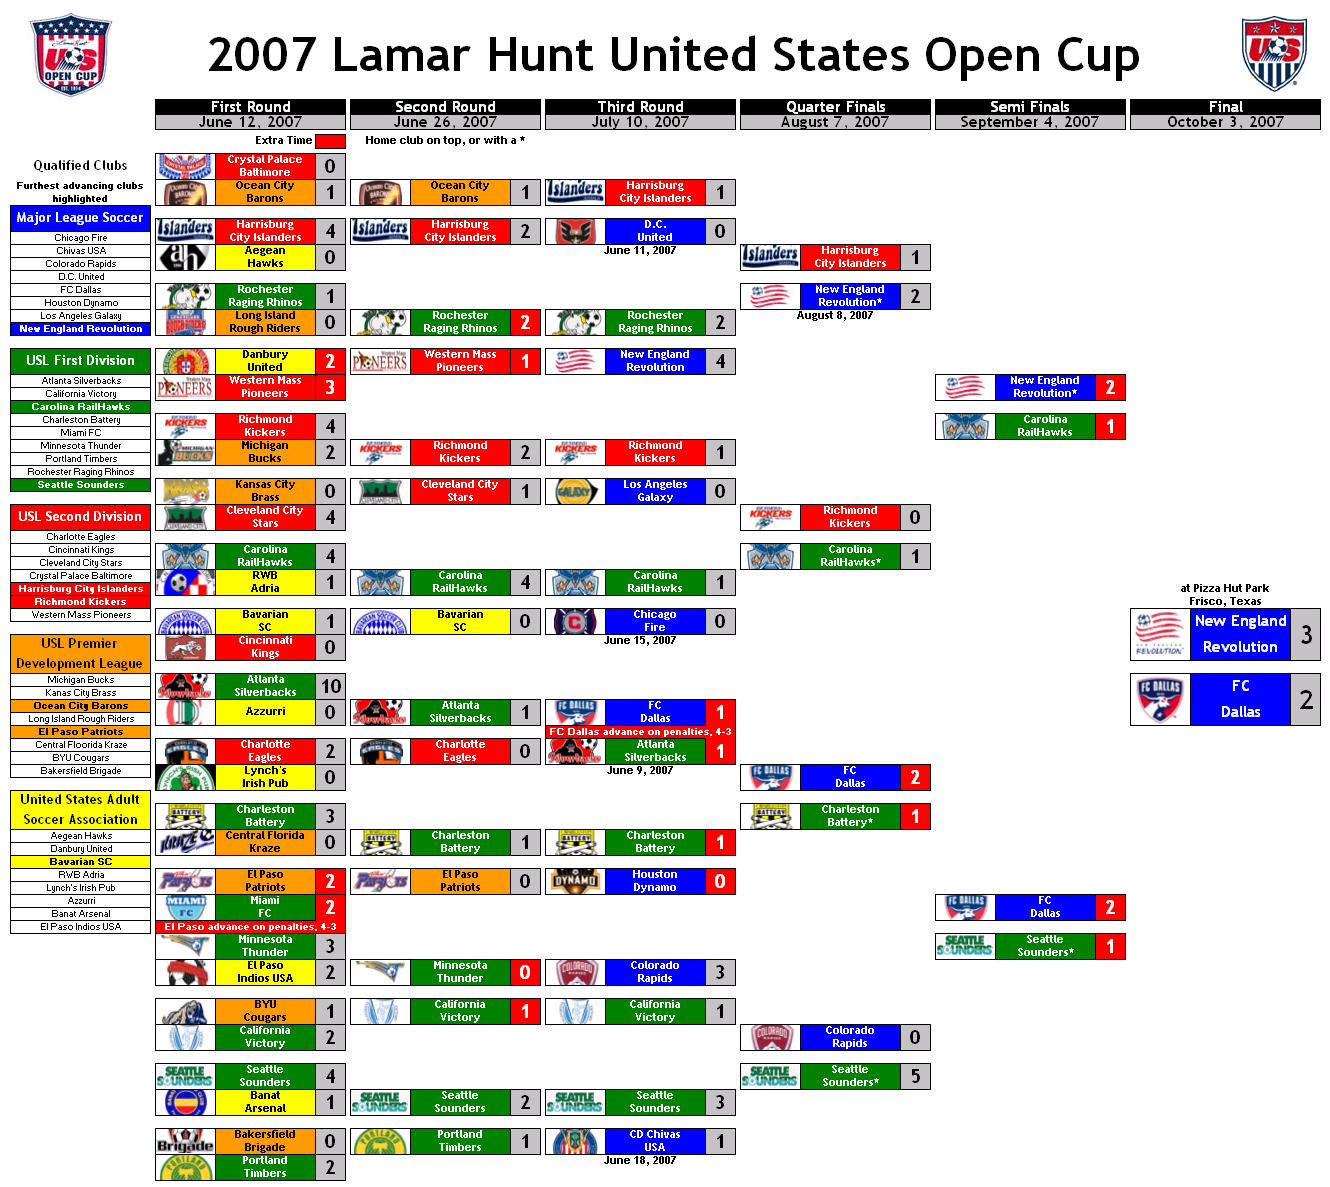 2007 Lamar Hunt US Open Cup bracket